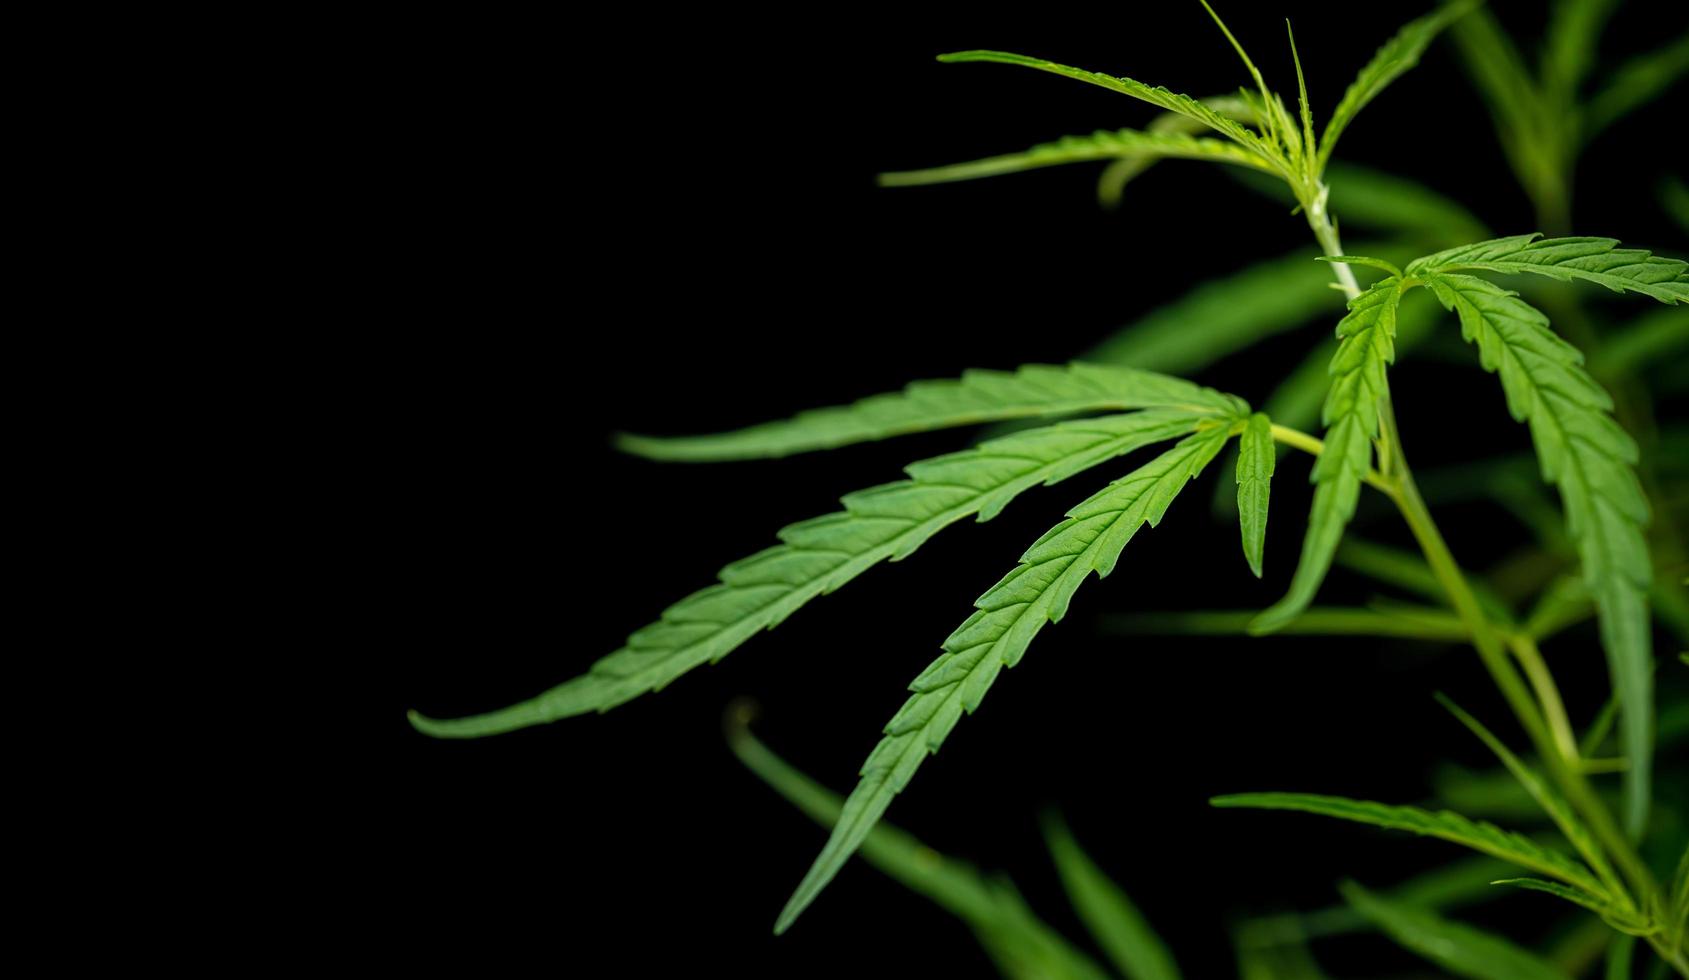 frisches Blatt grün frisch von Marihuana-Baum auf schwarzem Hintergrund foto